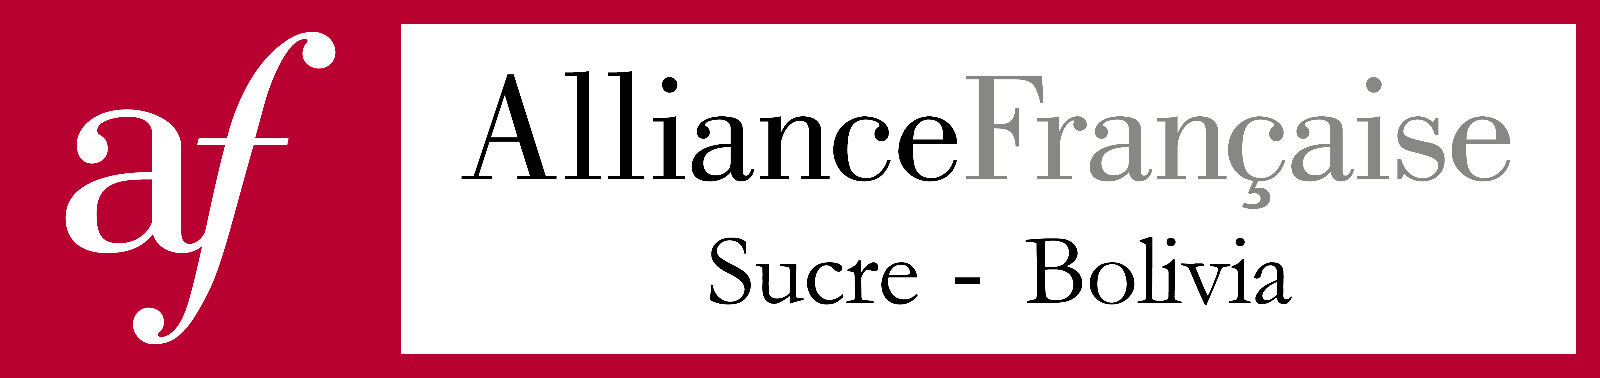 Alianza Francesa Sucre